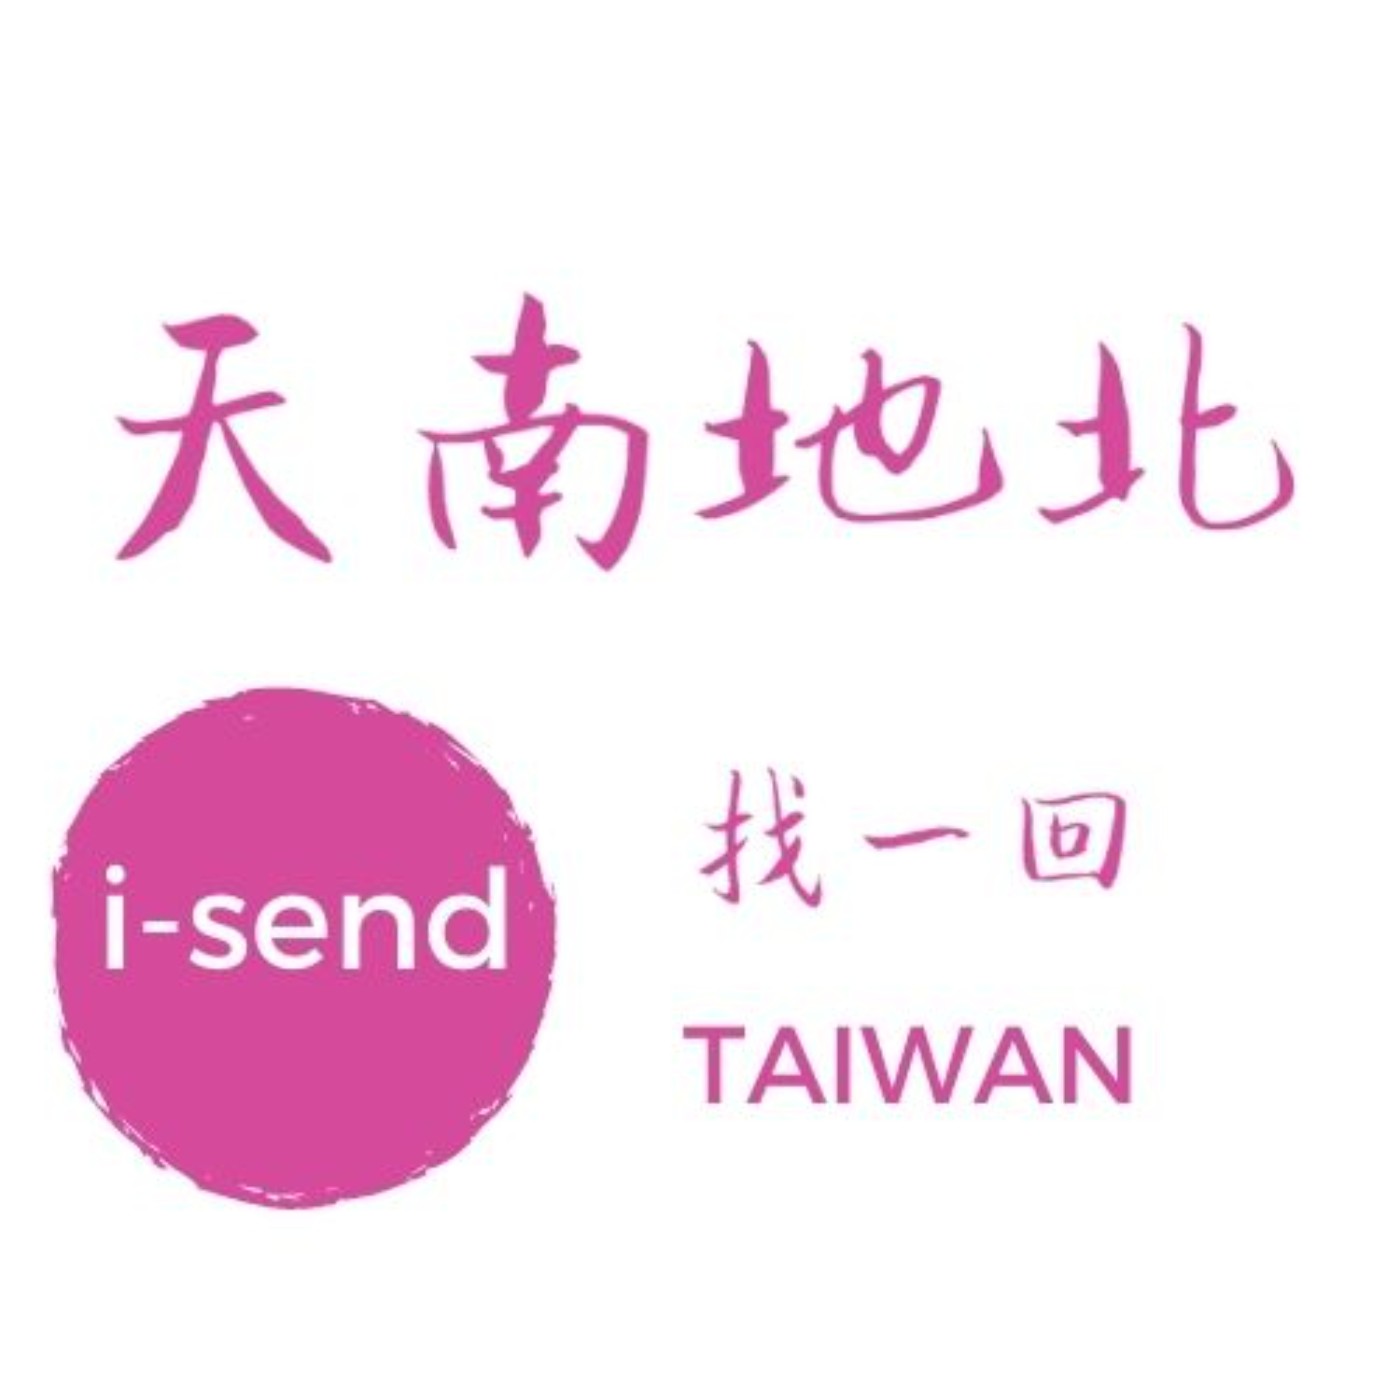 天南地北找一回TAIWAN-I send